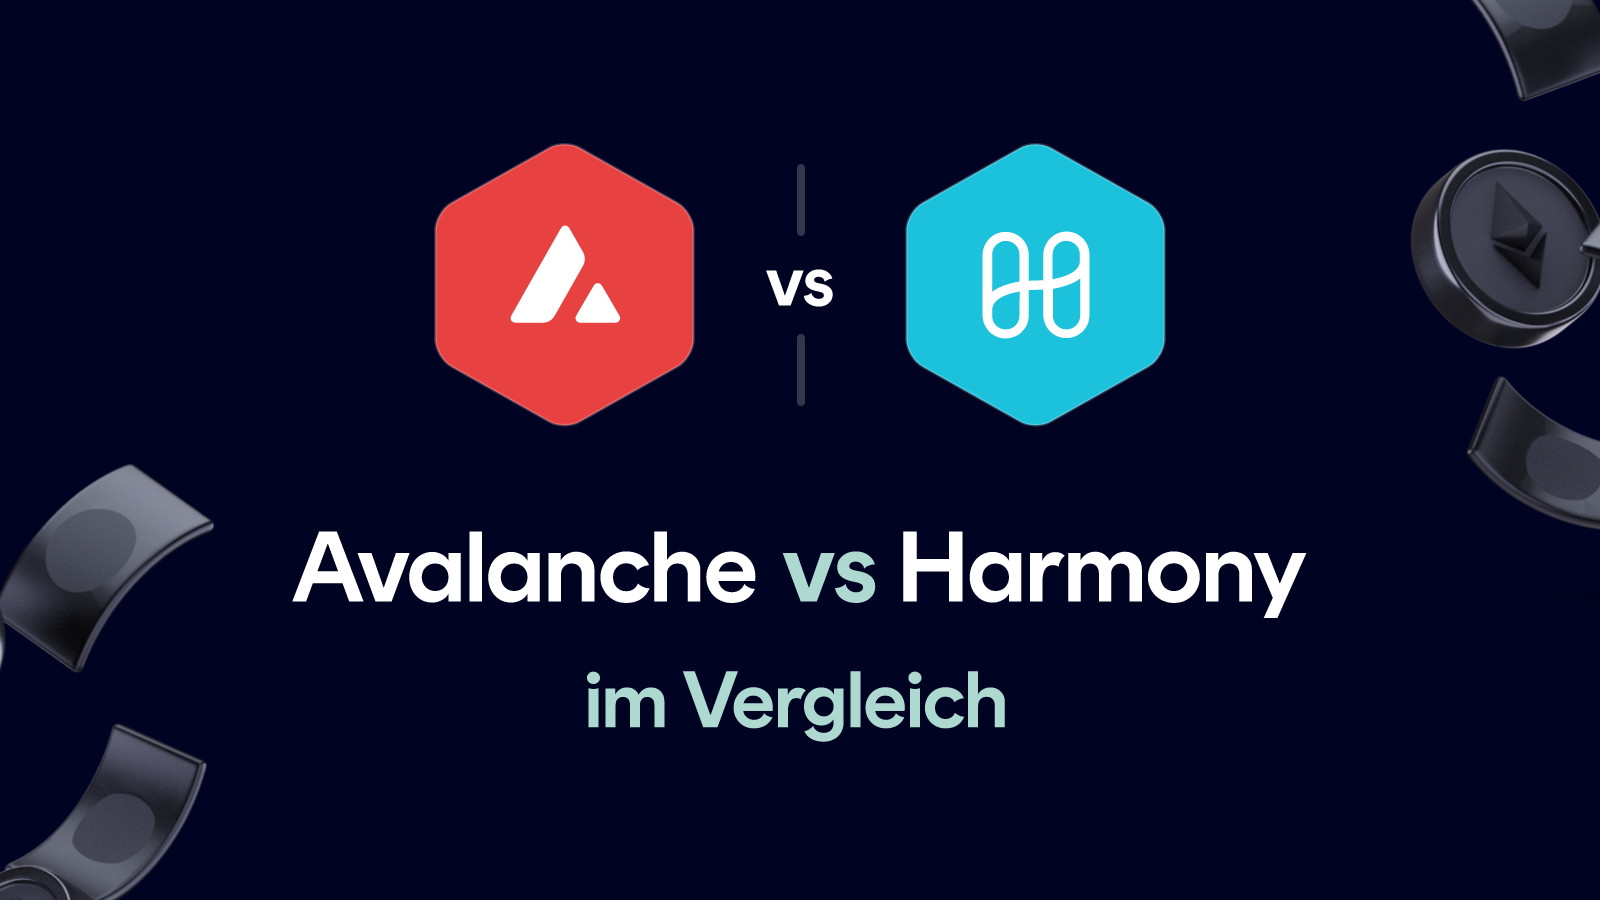 Avalanche vs Harmony